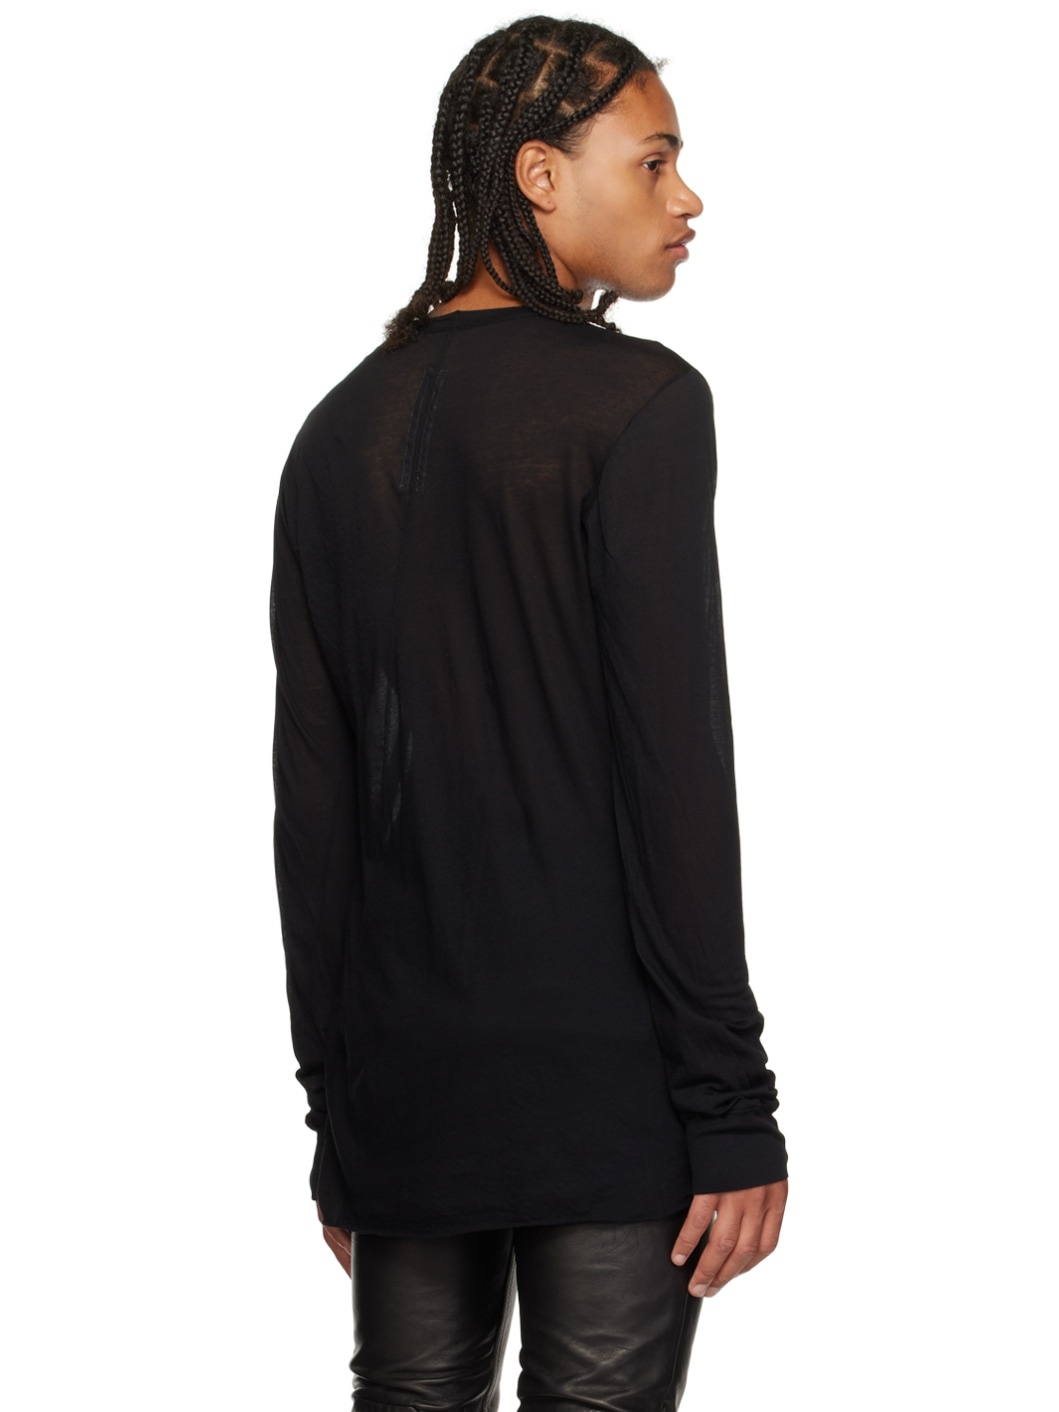 Black Edfu Basic Long Sleeve T-Shirt - 3